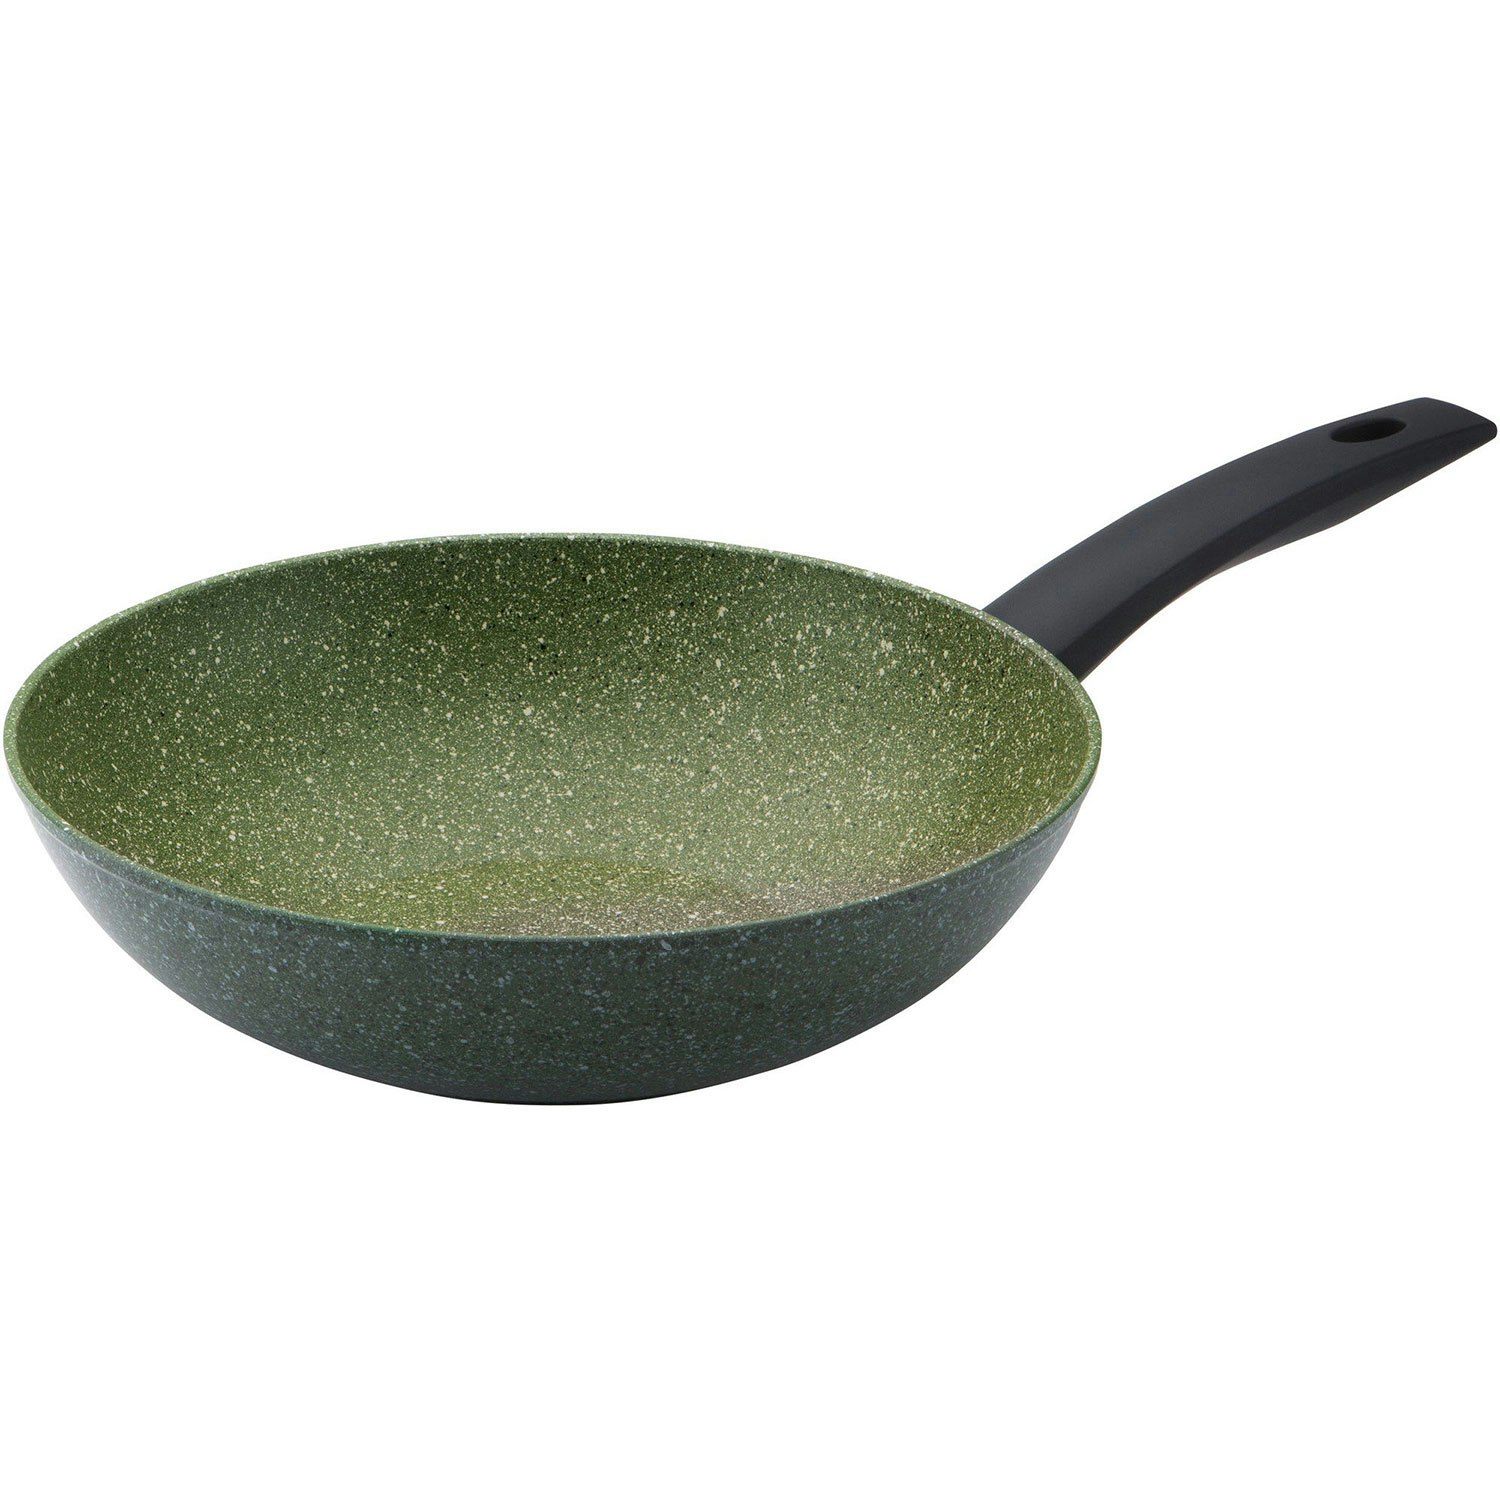 Essentials Pancake Pan 28cm - GreenPan @ RoyalDesign